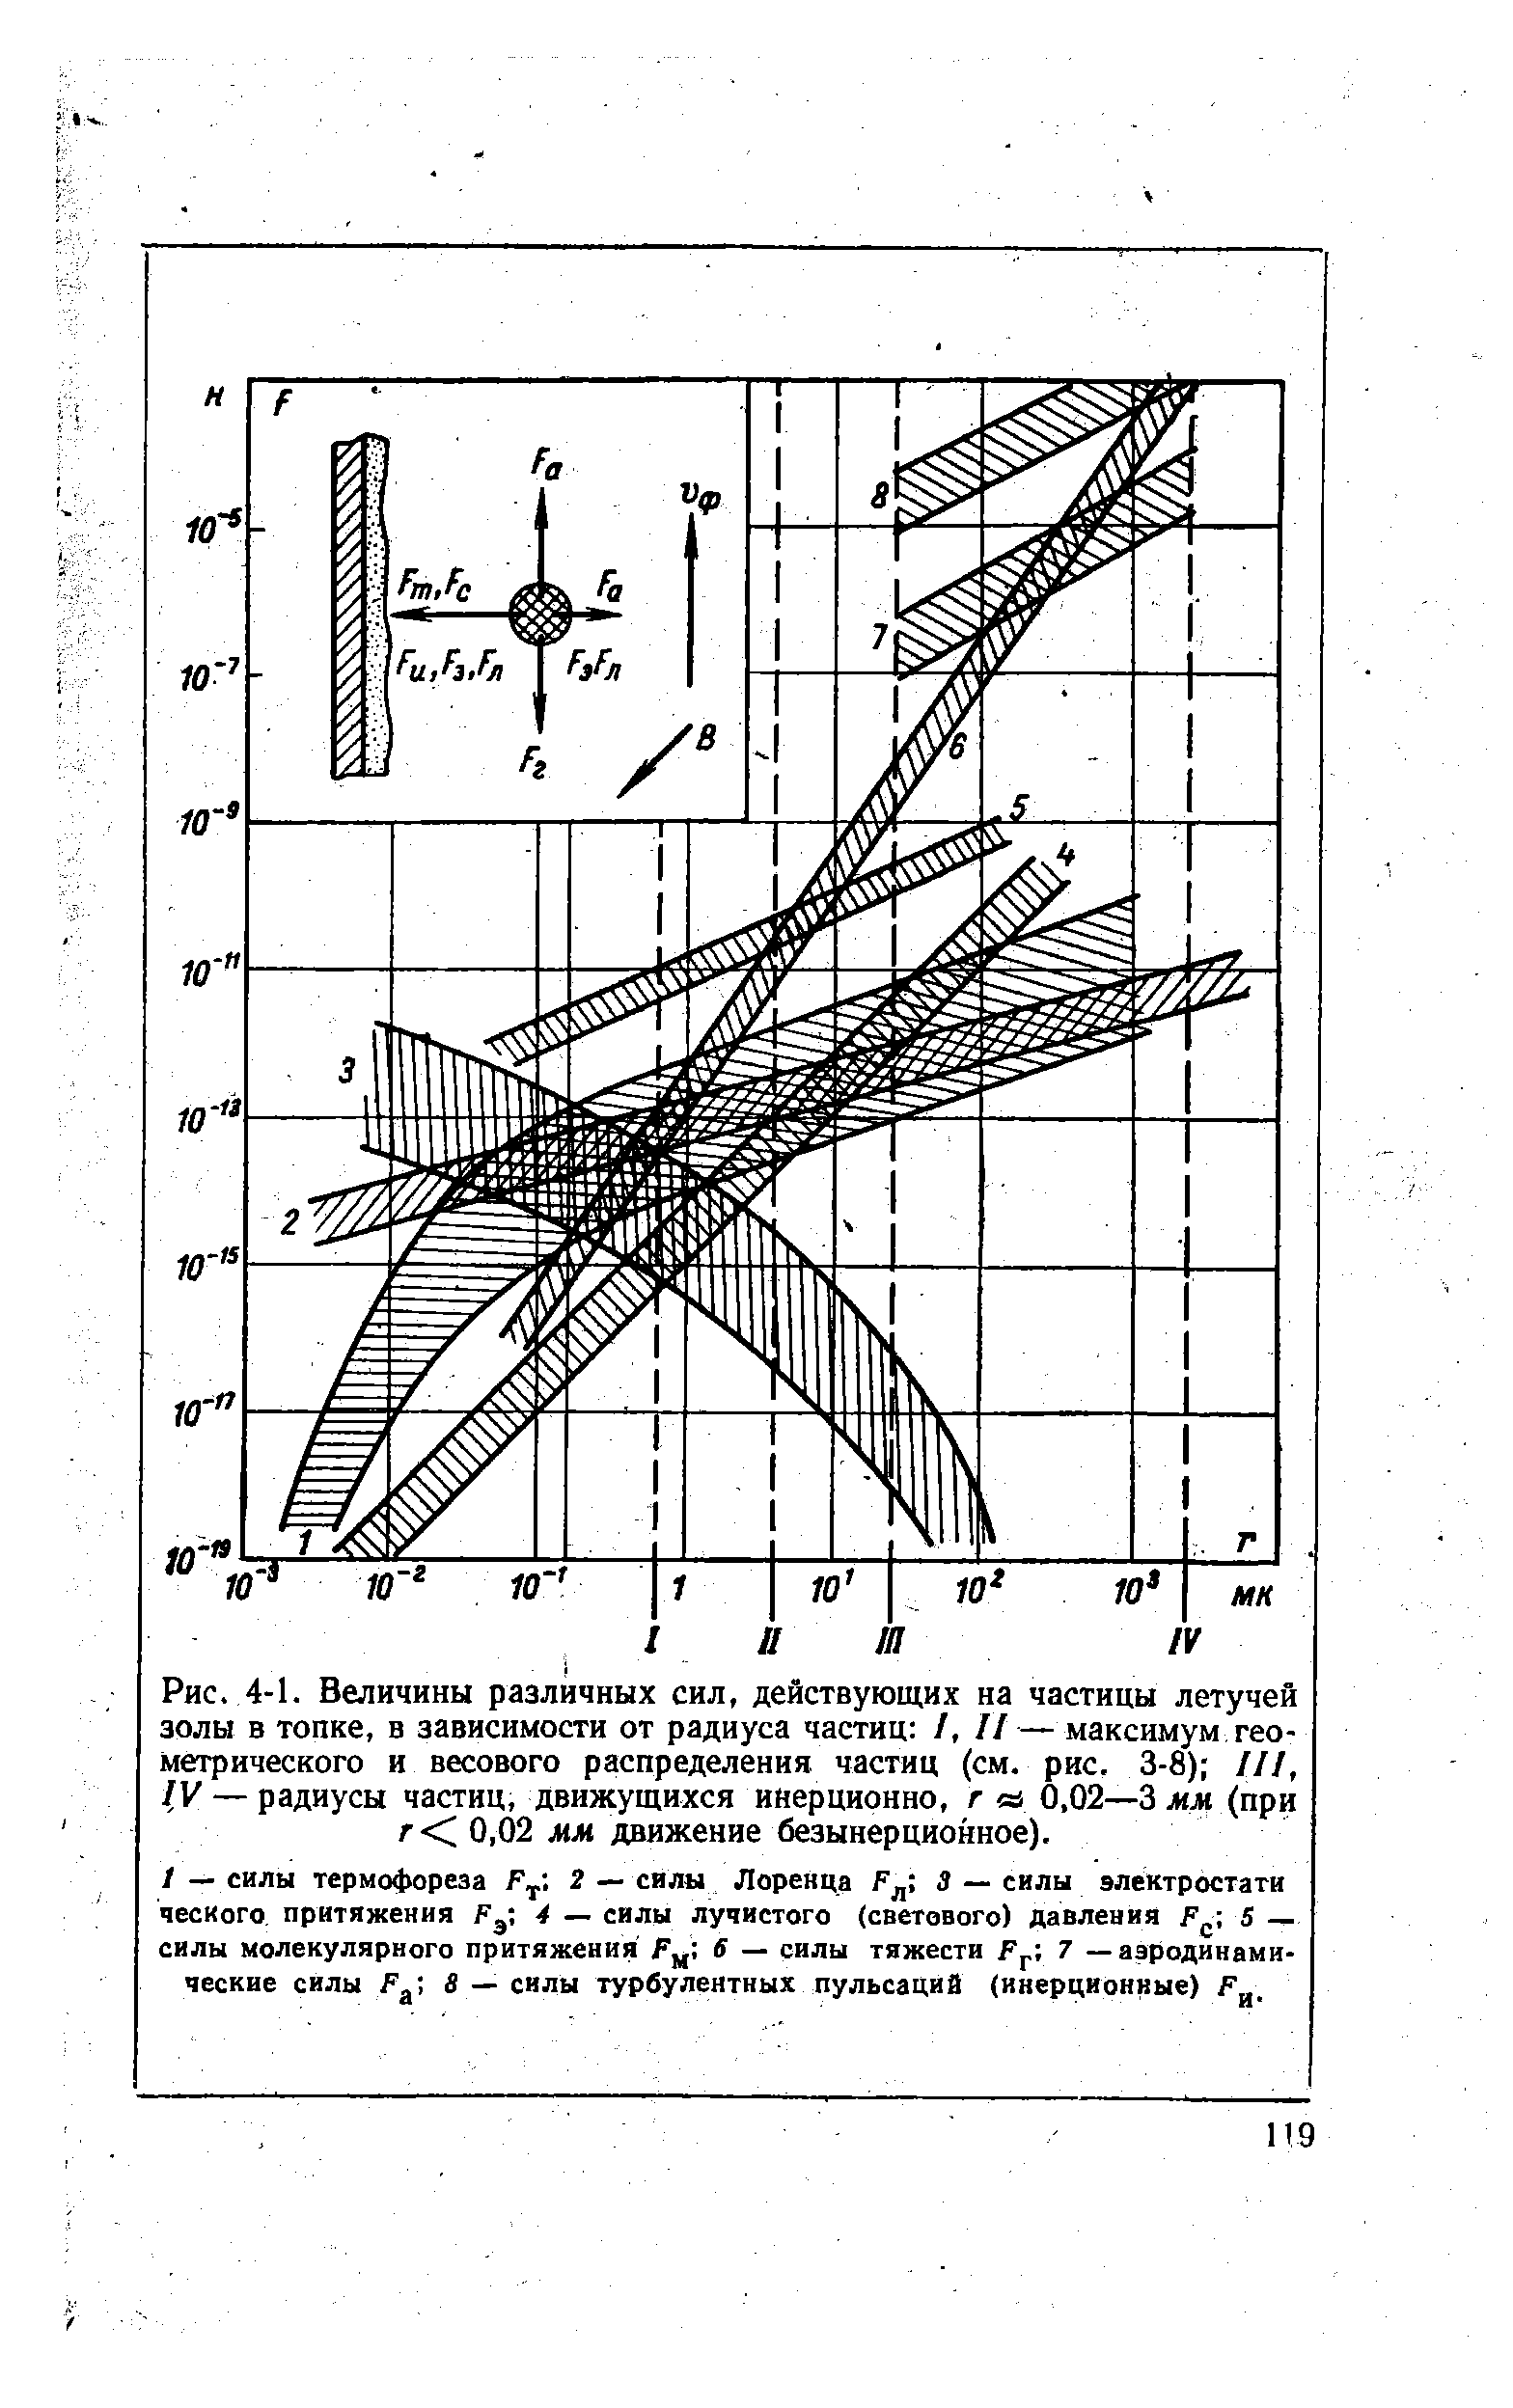 Рис. 4-1. Величины различных сил, действующих на частицы летучей золы в топке, в зависимости от радиуса частиц /, II— максимум геометрического и весового распределения частиц (см. рис. 3-8) III, IV — радиусы частиц, движущихся инерционно, г ei 0,02—3 мм (при / < 0,02 лл движение безынерционное). t — силы термофореза F. 2 — силы Лоренца F 3 — силы электростати
